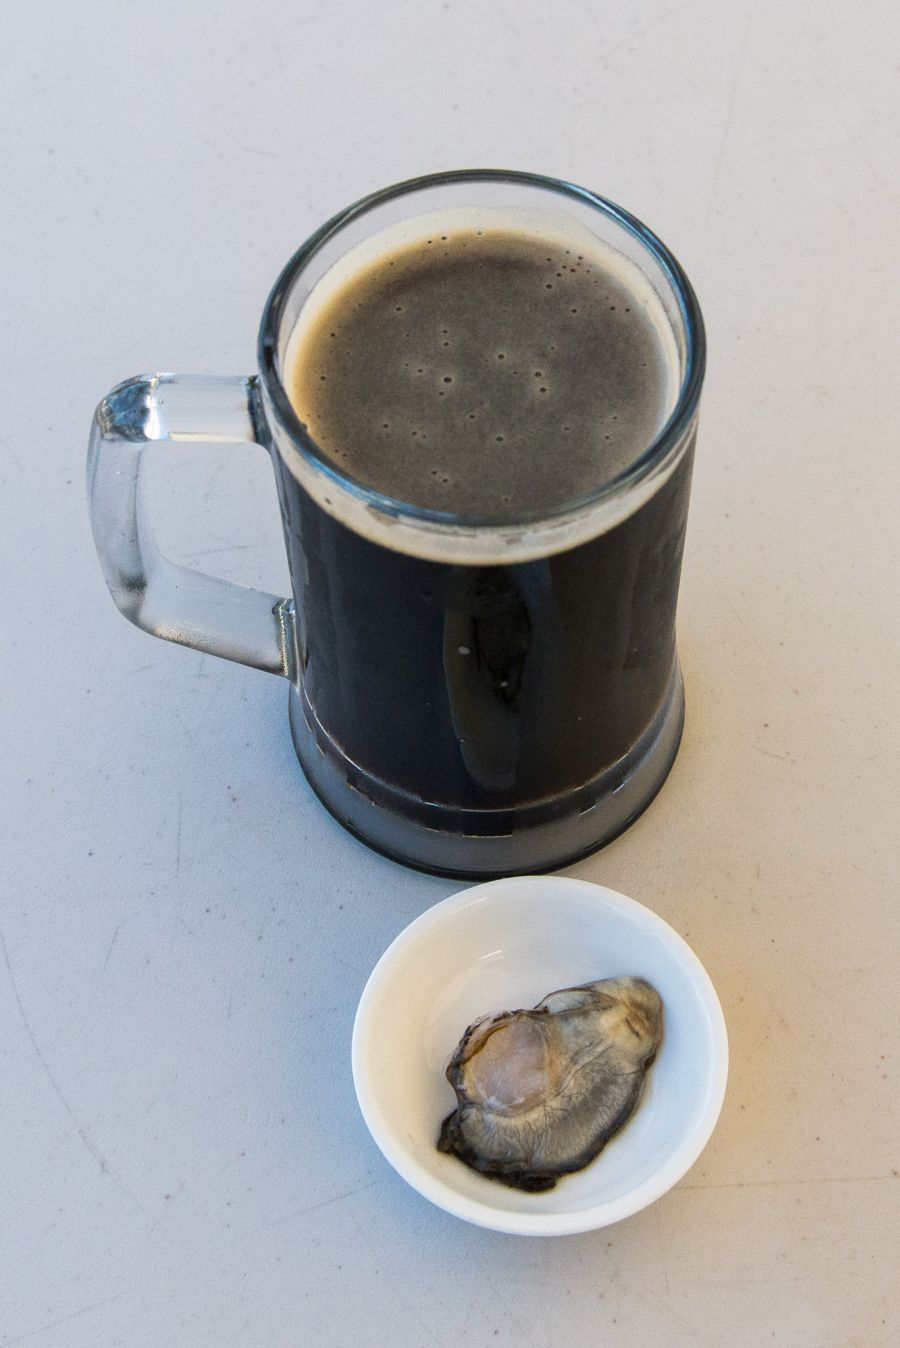 Drunken oyster - Onetangi dark ale